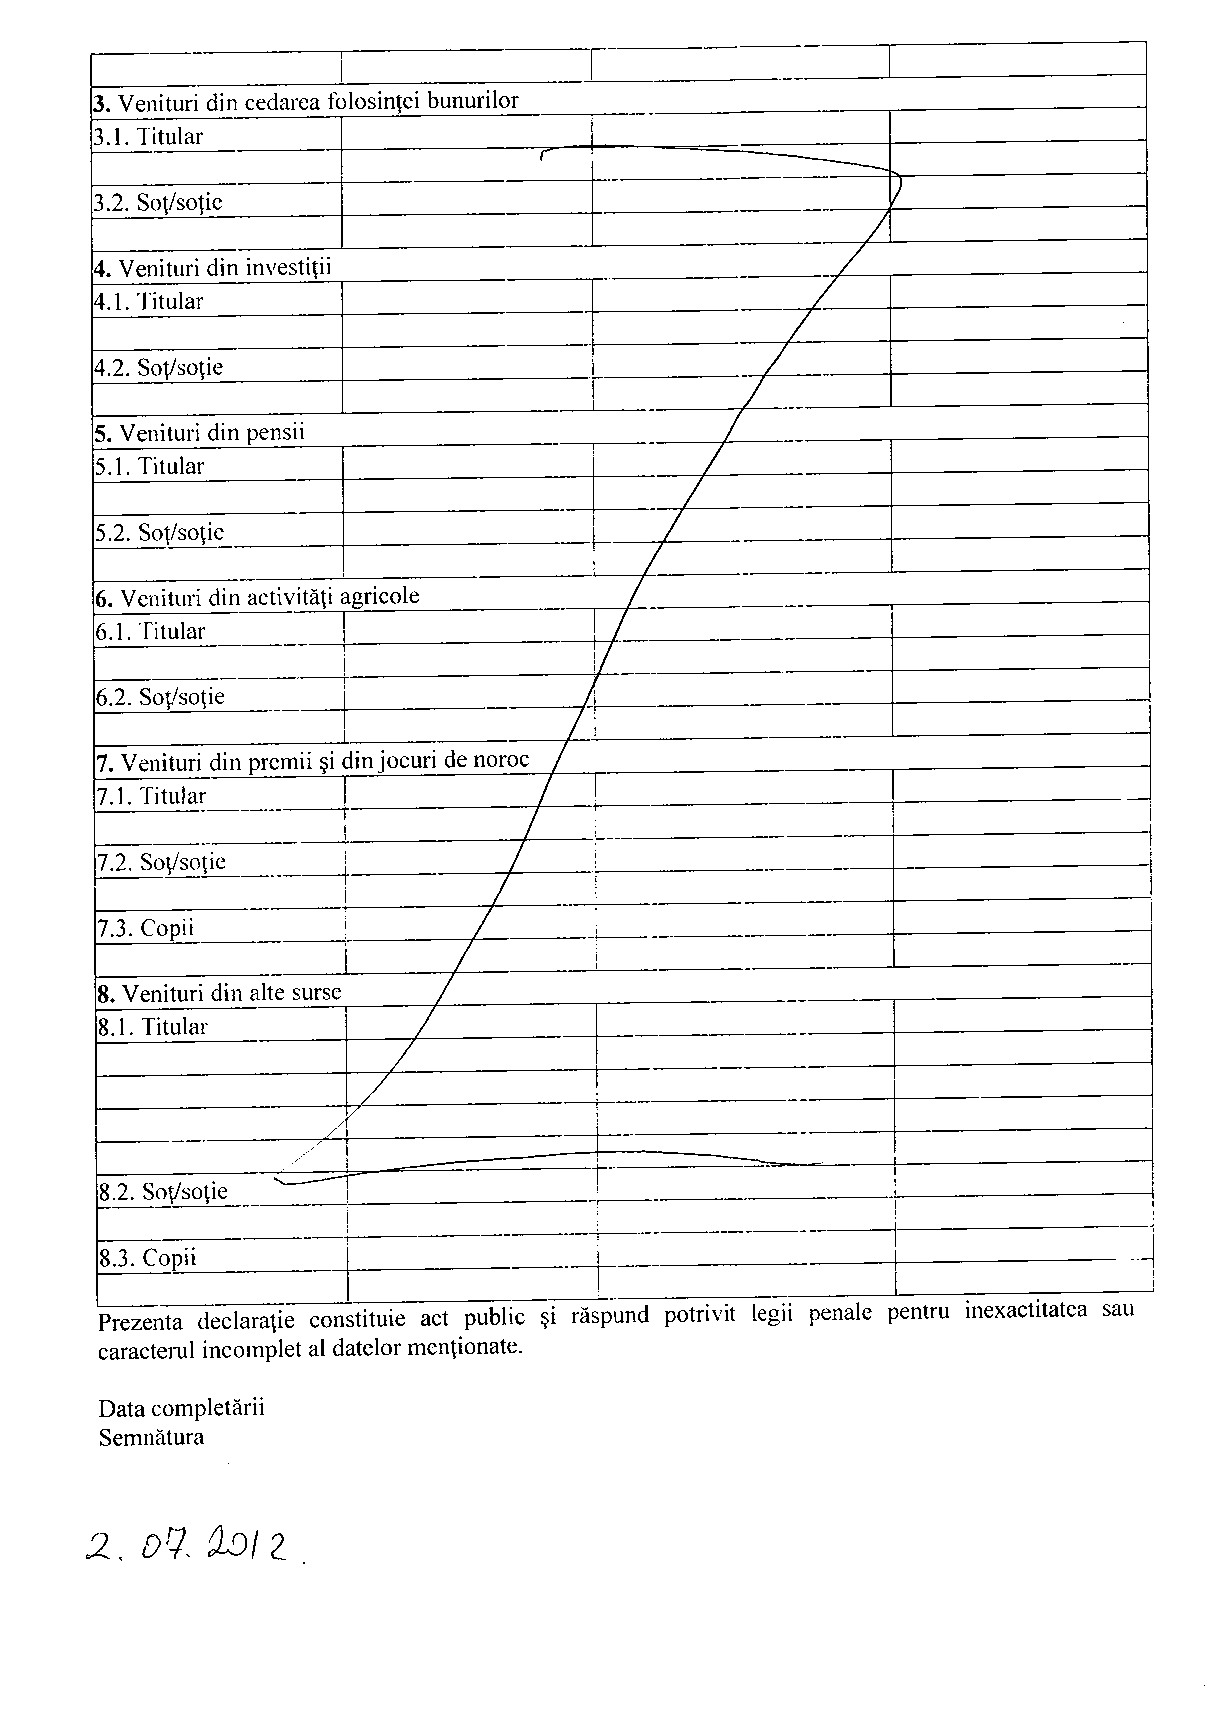 Declaratia de avere si de interese din data 25.06.2012 - pagina 4 din 6